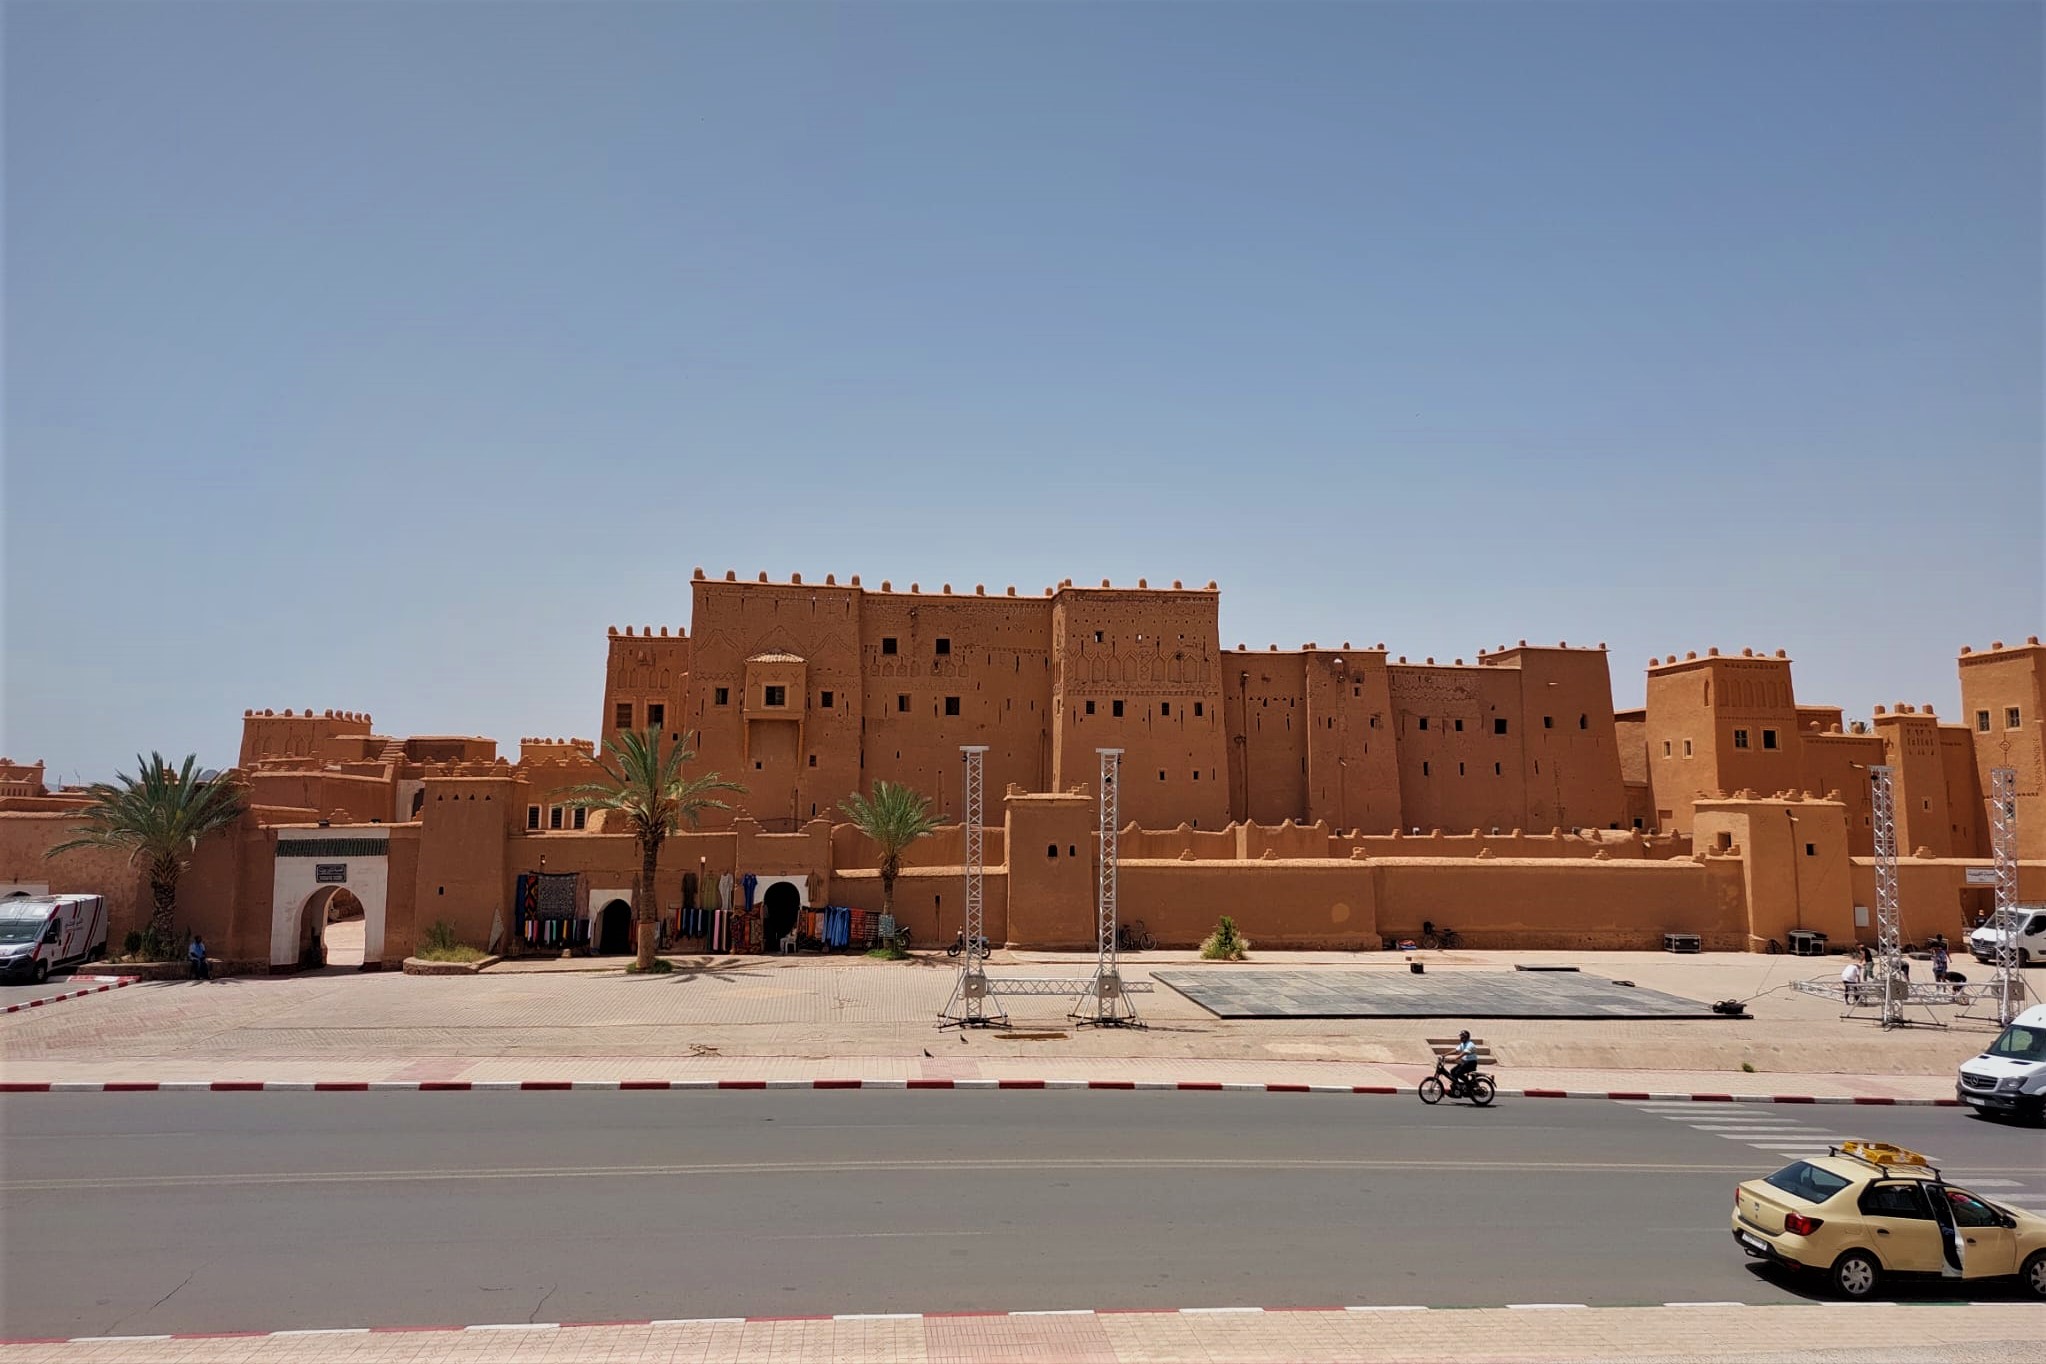 Marrakesh to Merzouga 3 days desert tour